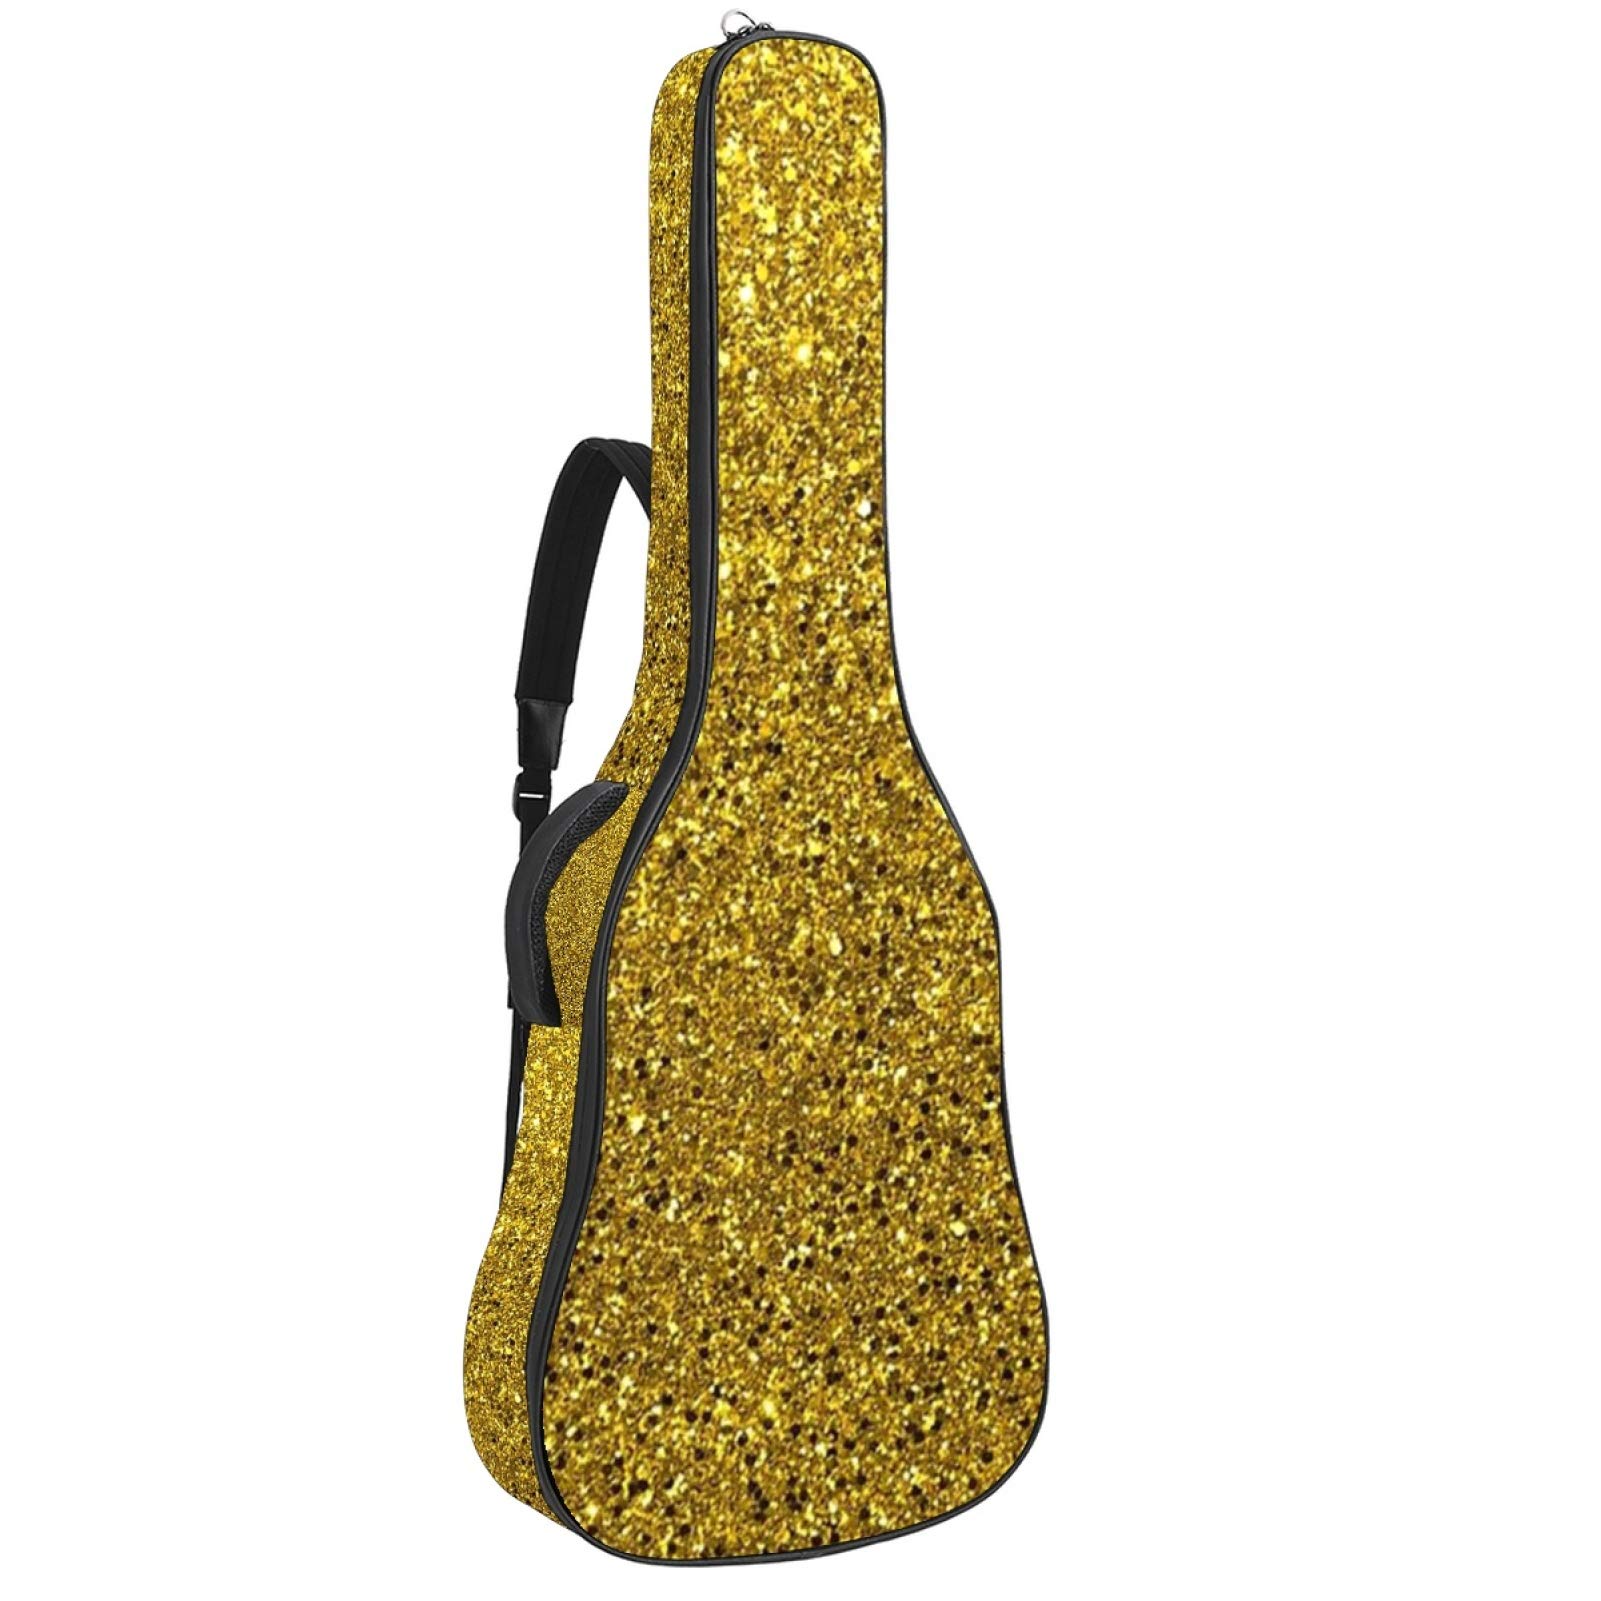 Gitarrentasche mit Reißverschluss, wasserdicht, weich, für Bassgitarre, Akustik- und klassische Folk-Gitarre, Gold-Glitzer